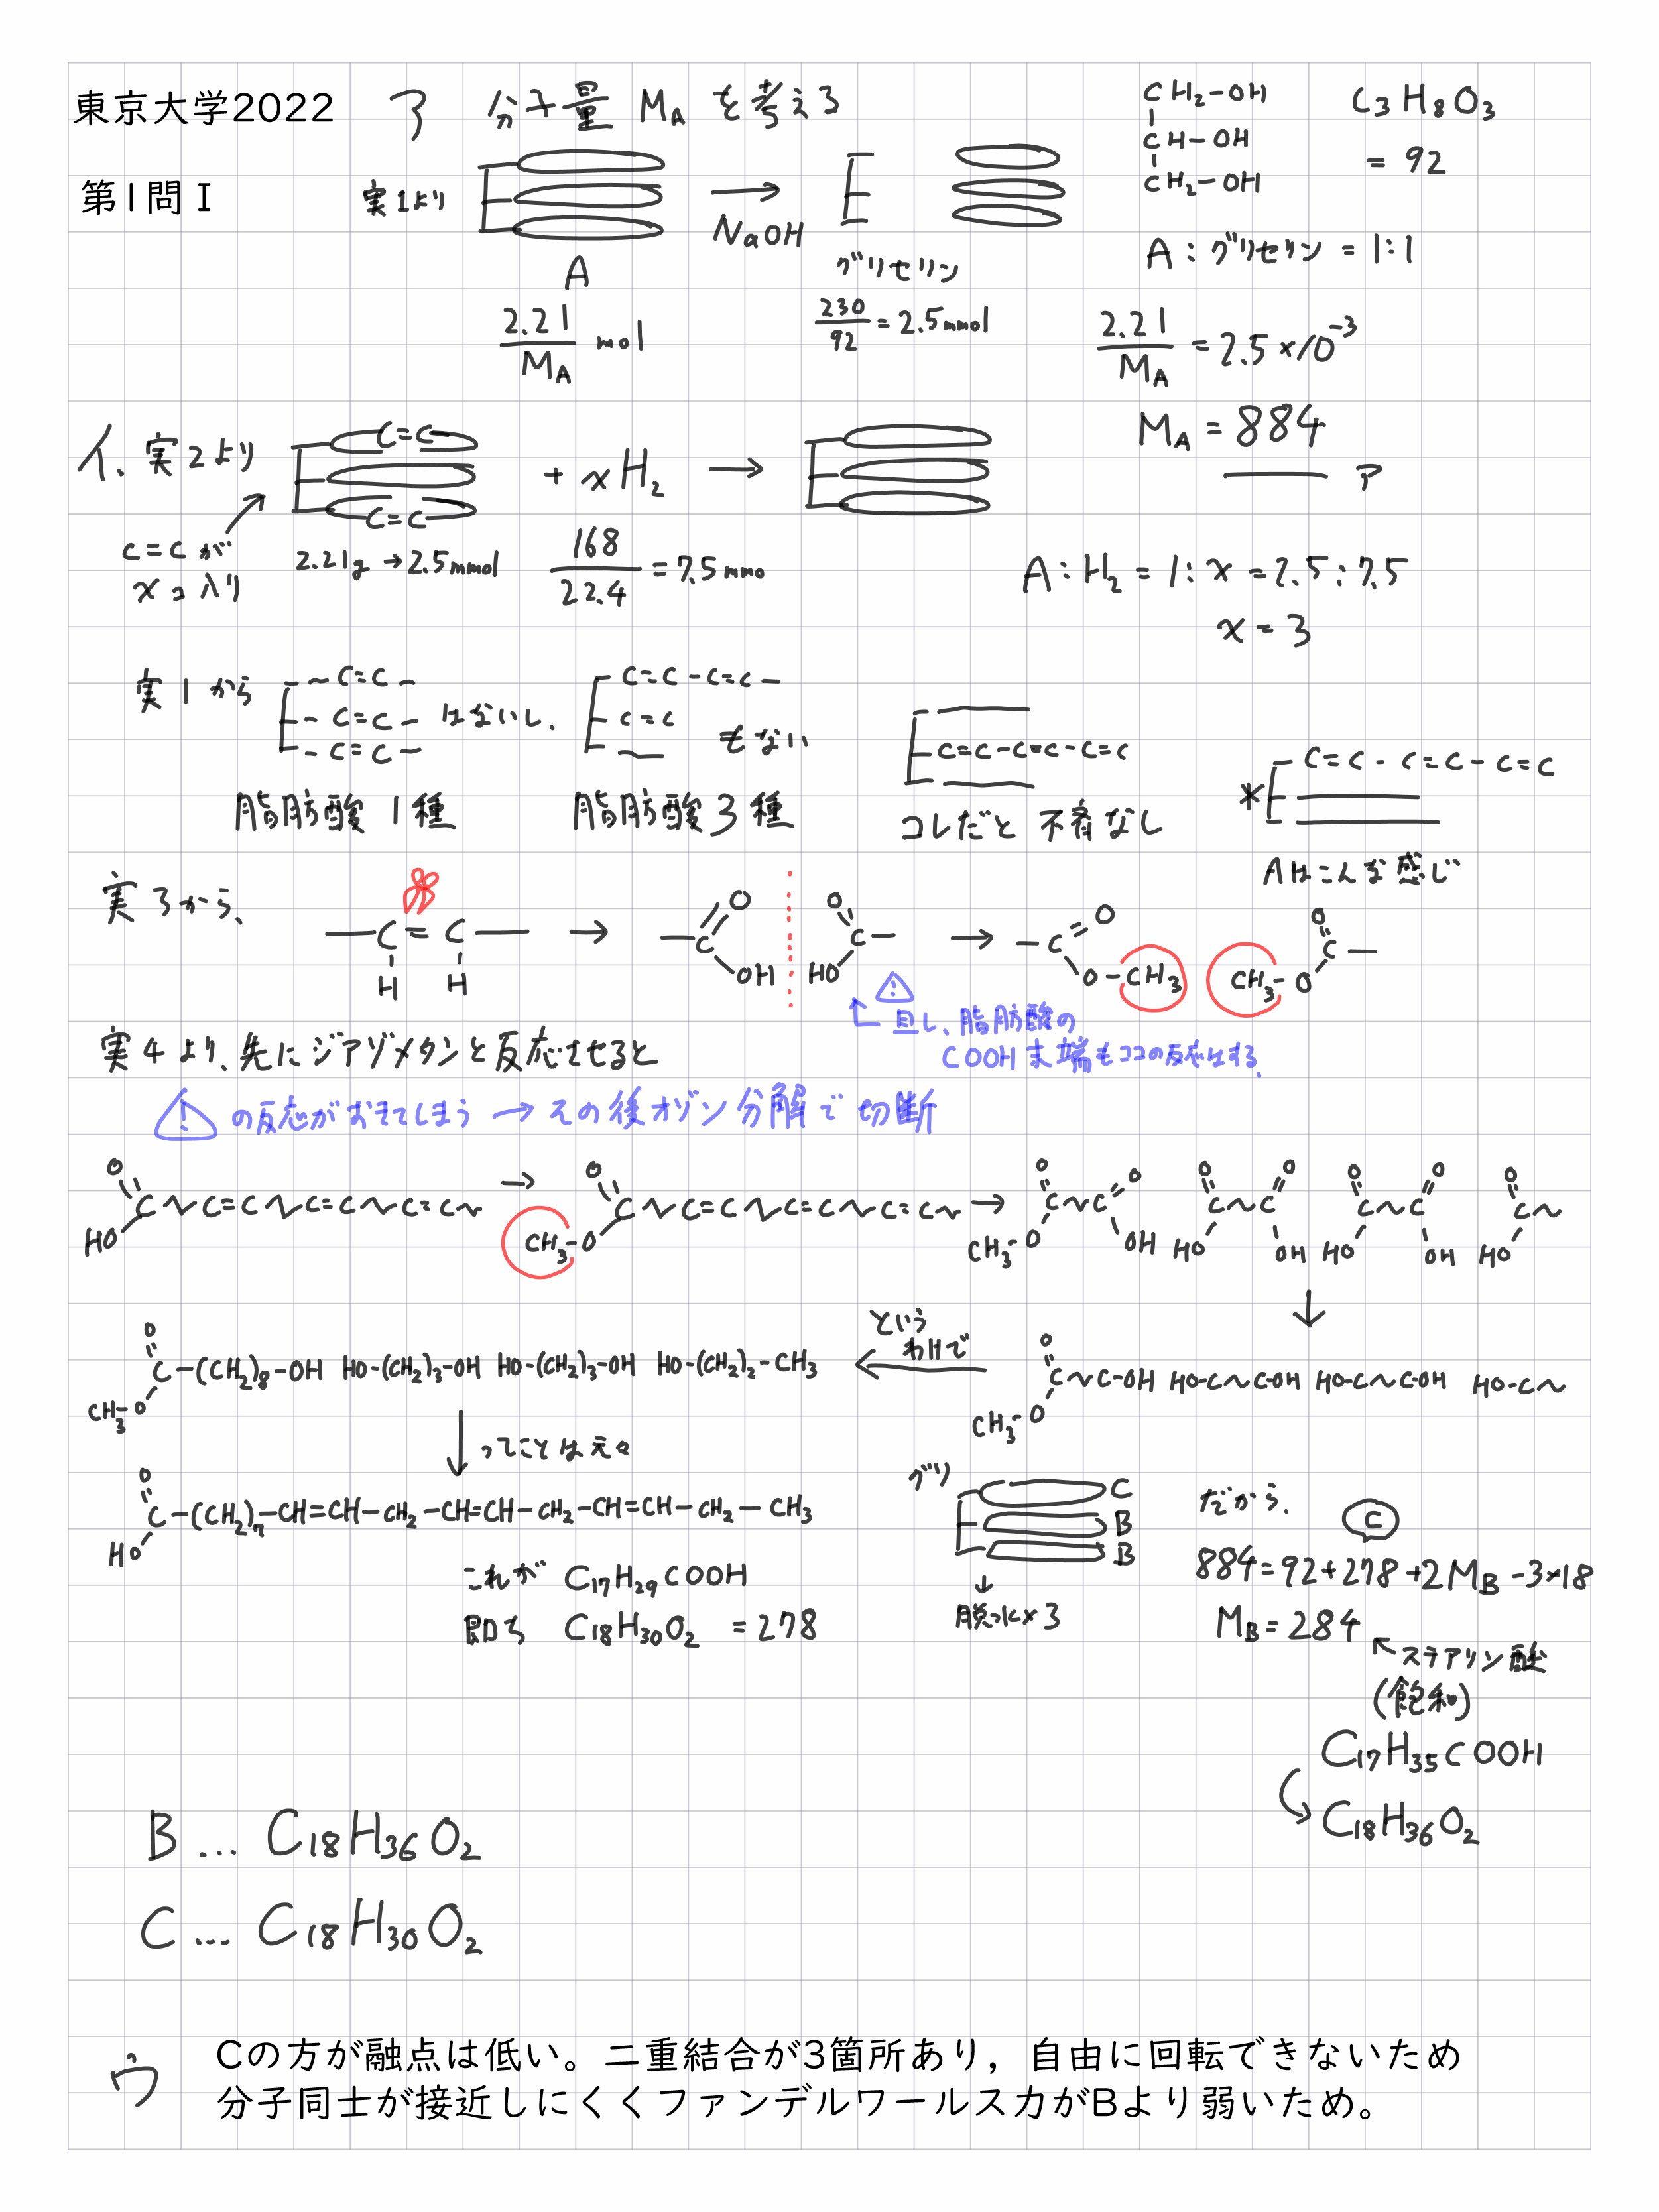 東京大学大学院 工学系 応用化学専攻 院試 過去問 解答例(H22~R2) - 参考書